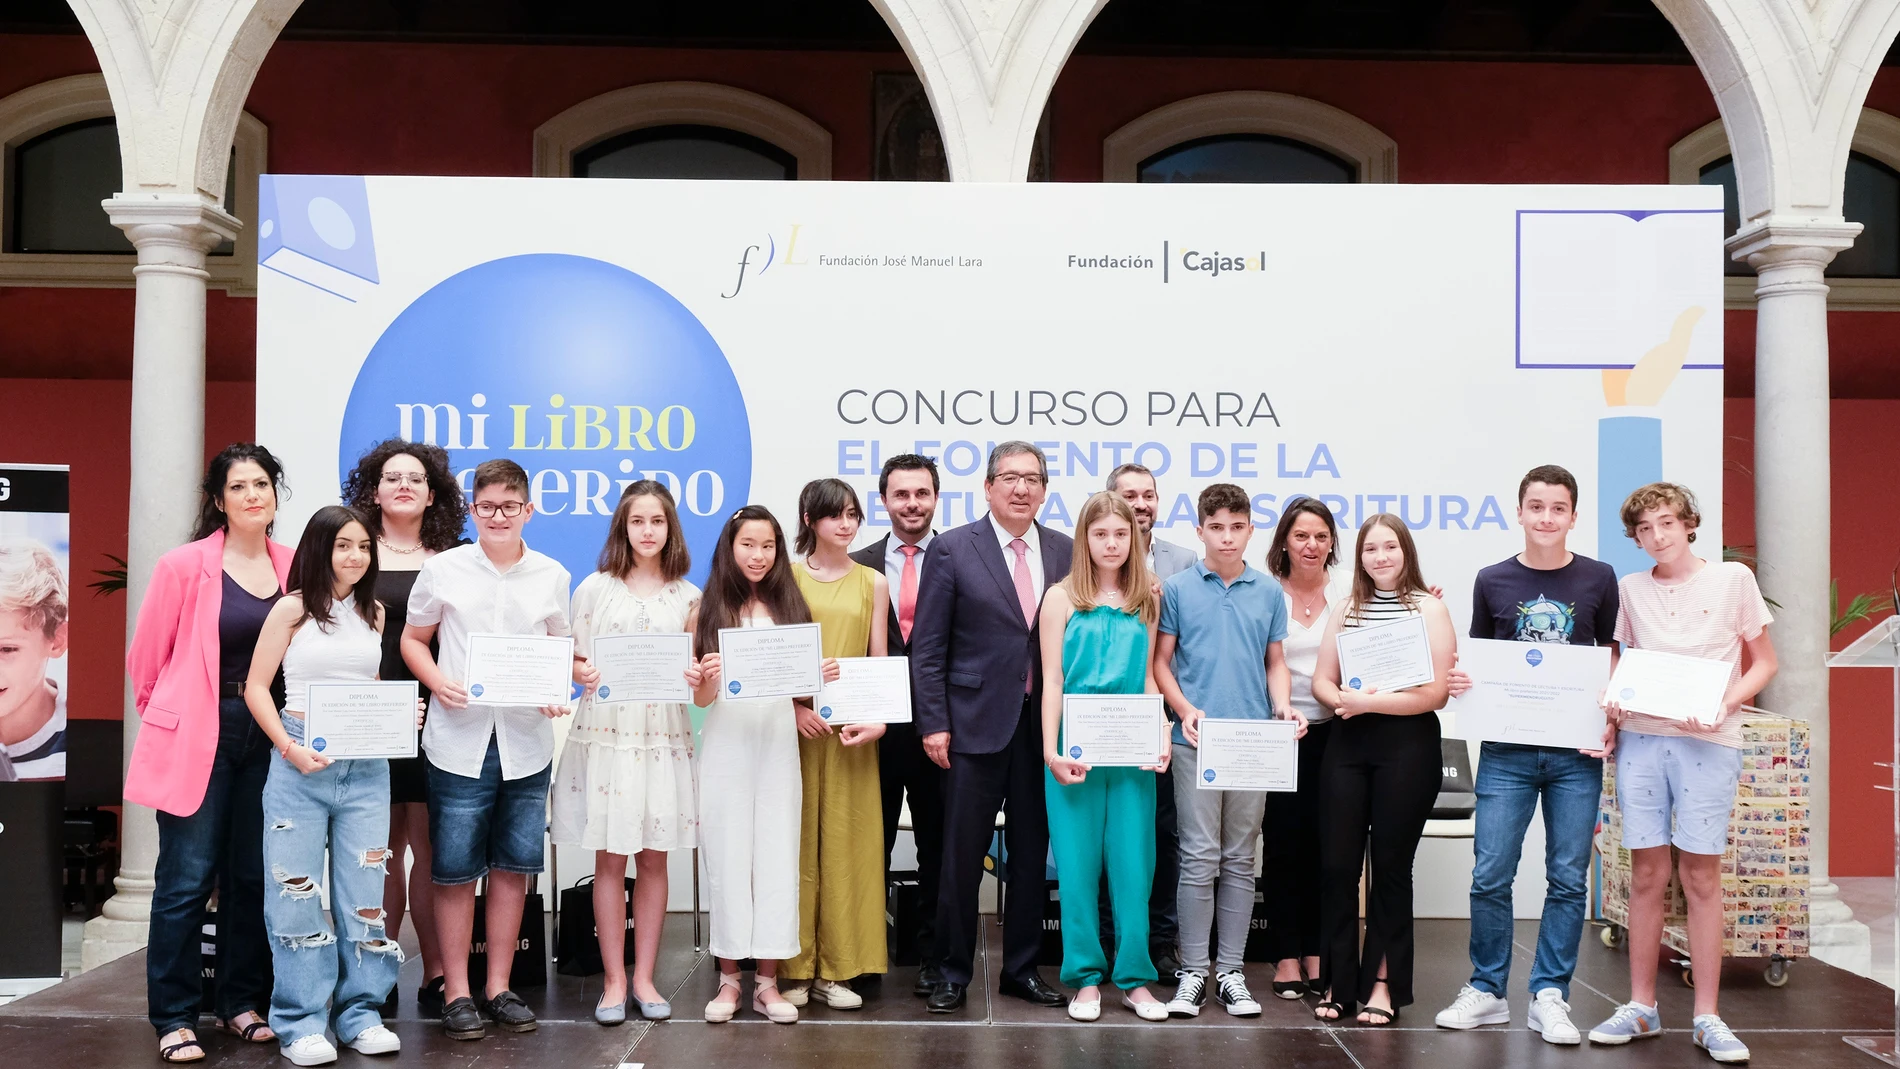  La décima edición del concurso 'Mi libro preferido' cierra en Andalucía con la participación de más de 2.000 alumnos